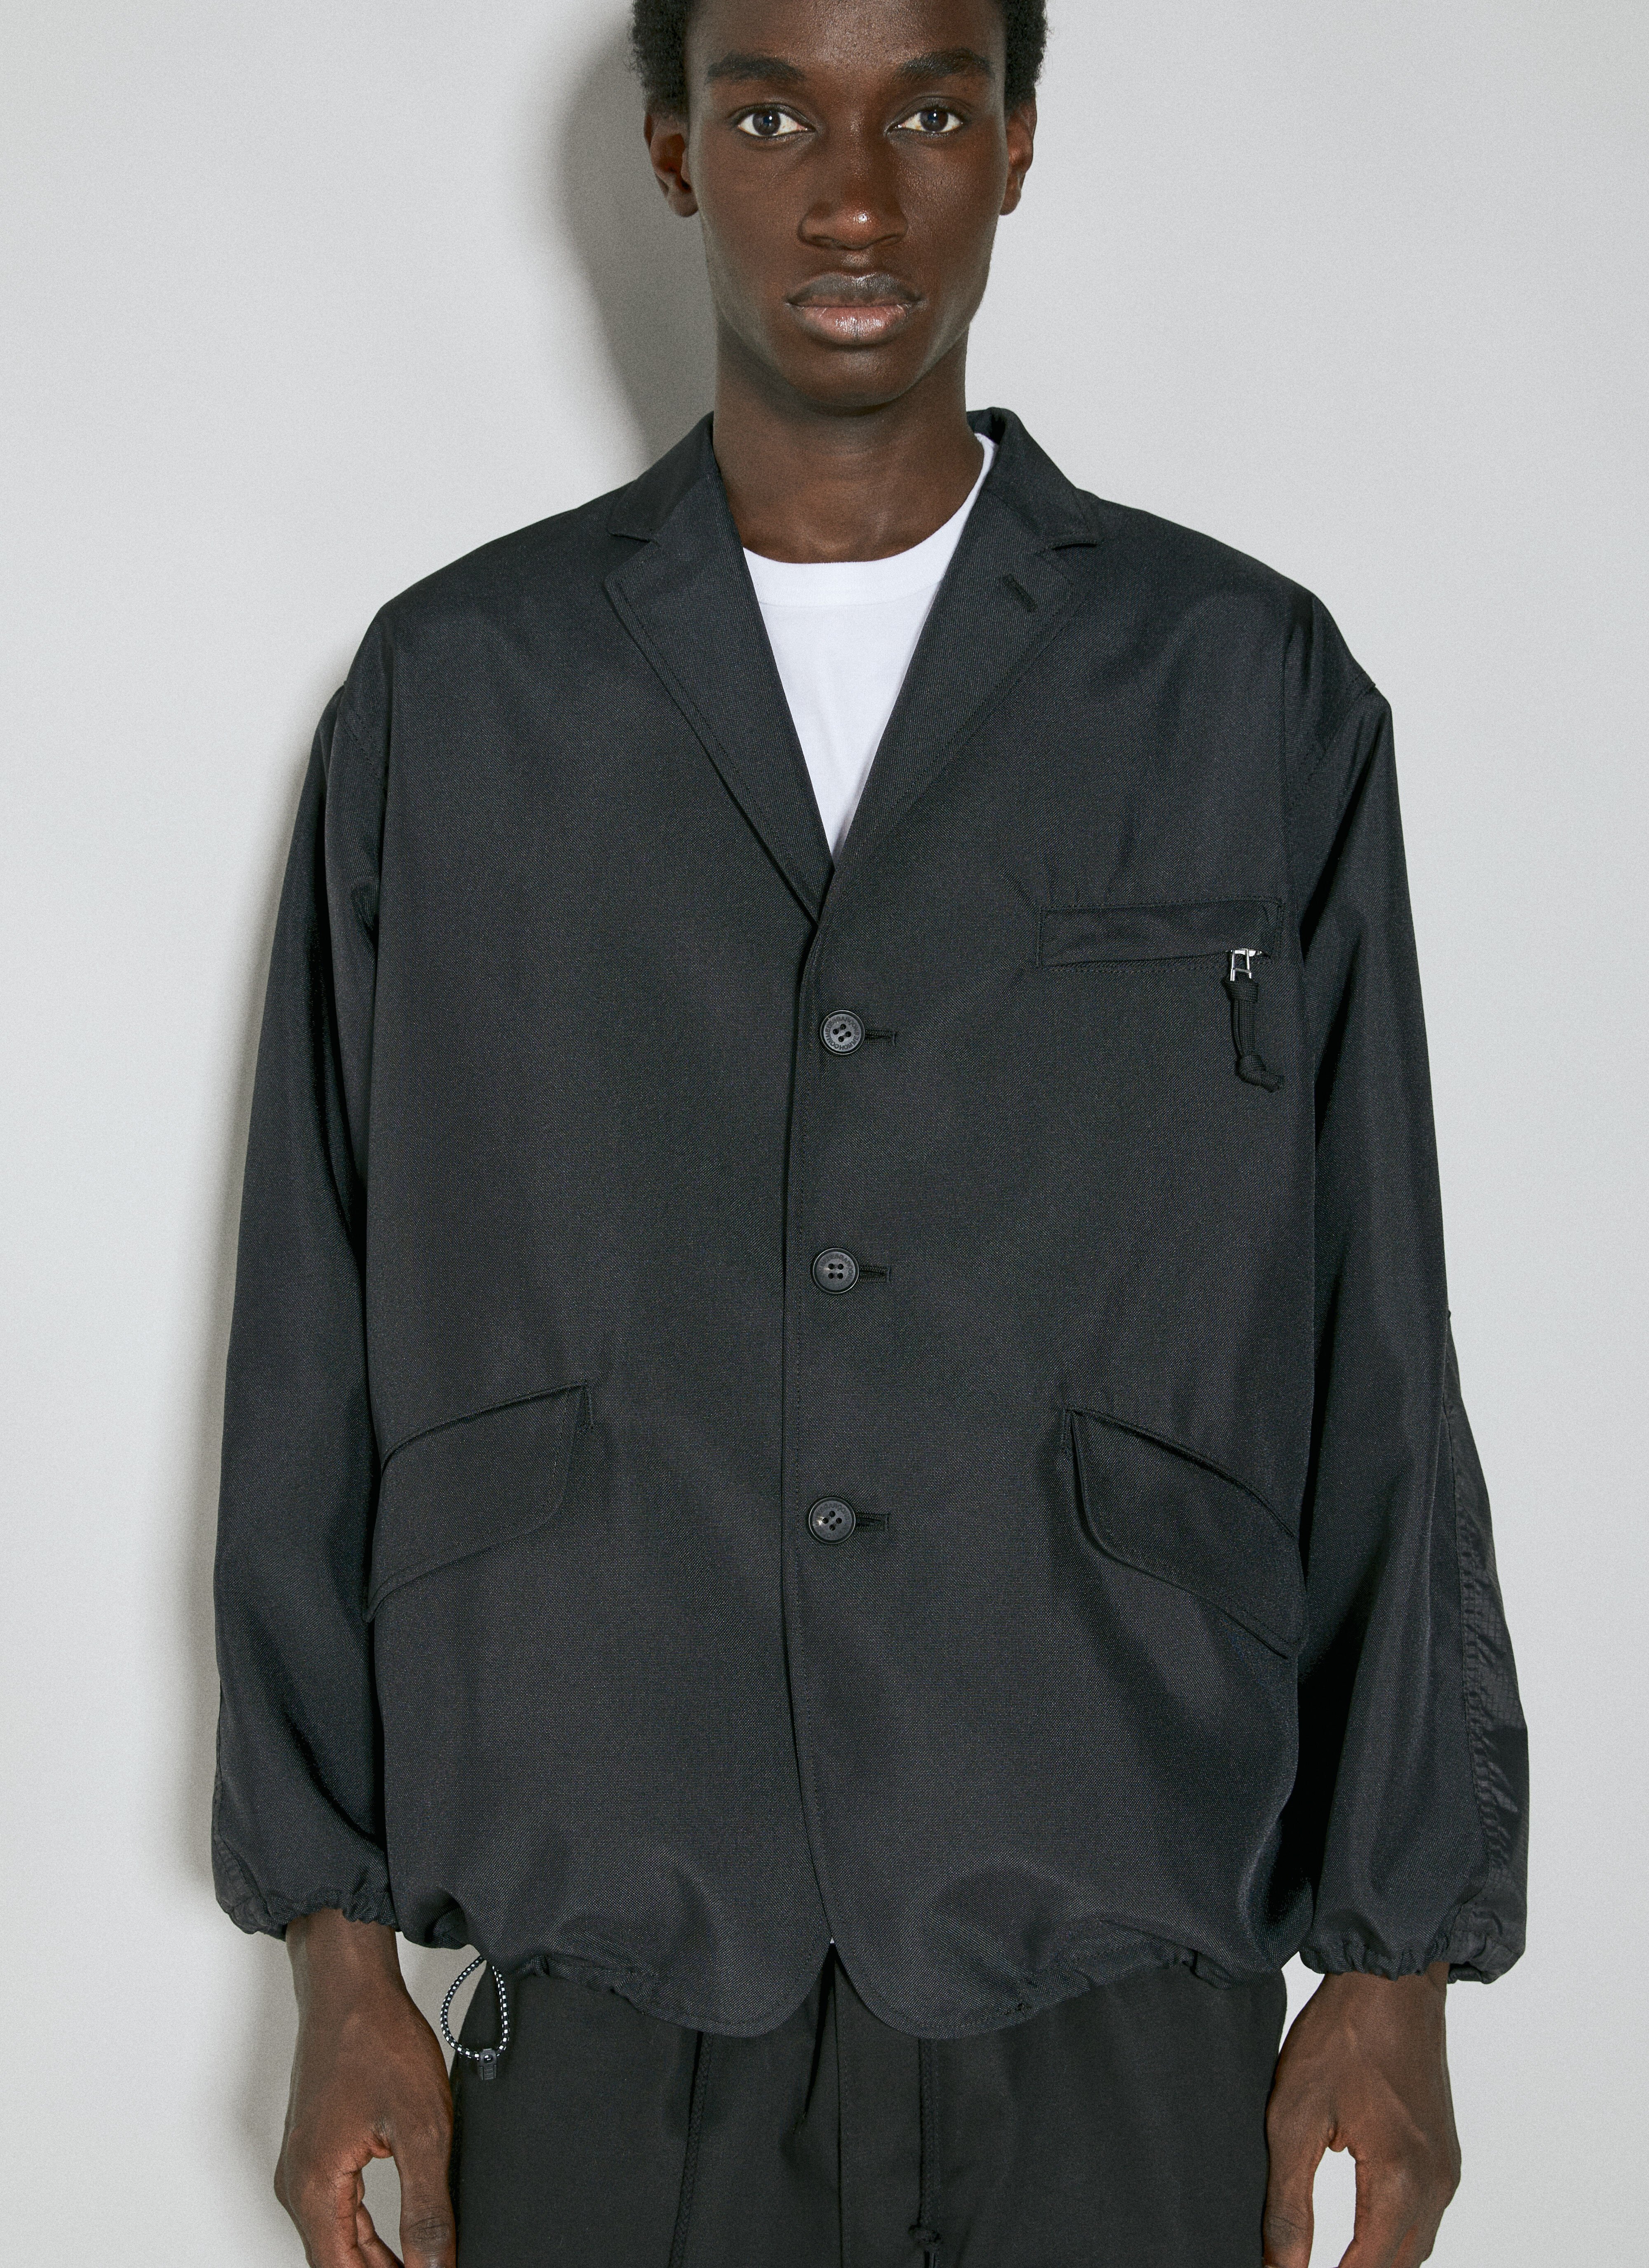 Comme des Garçons Homme Tailored Jacket Black cdh0154008